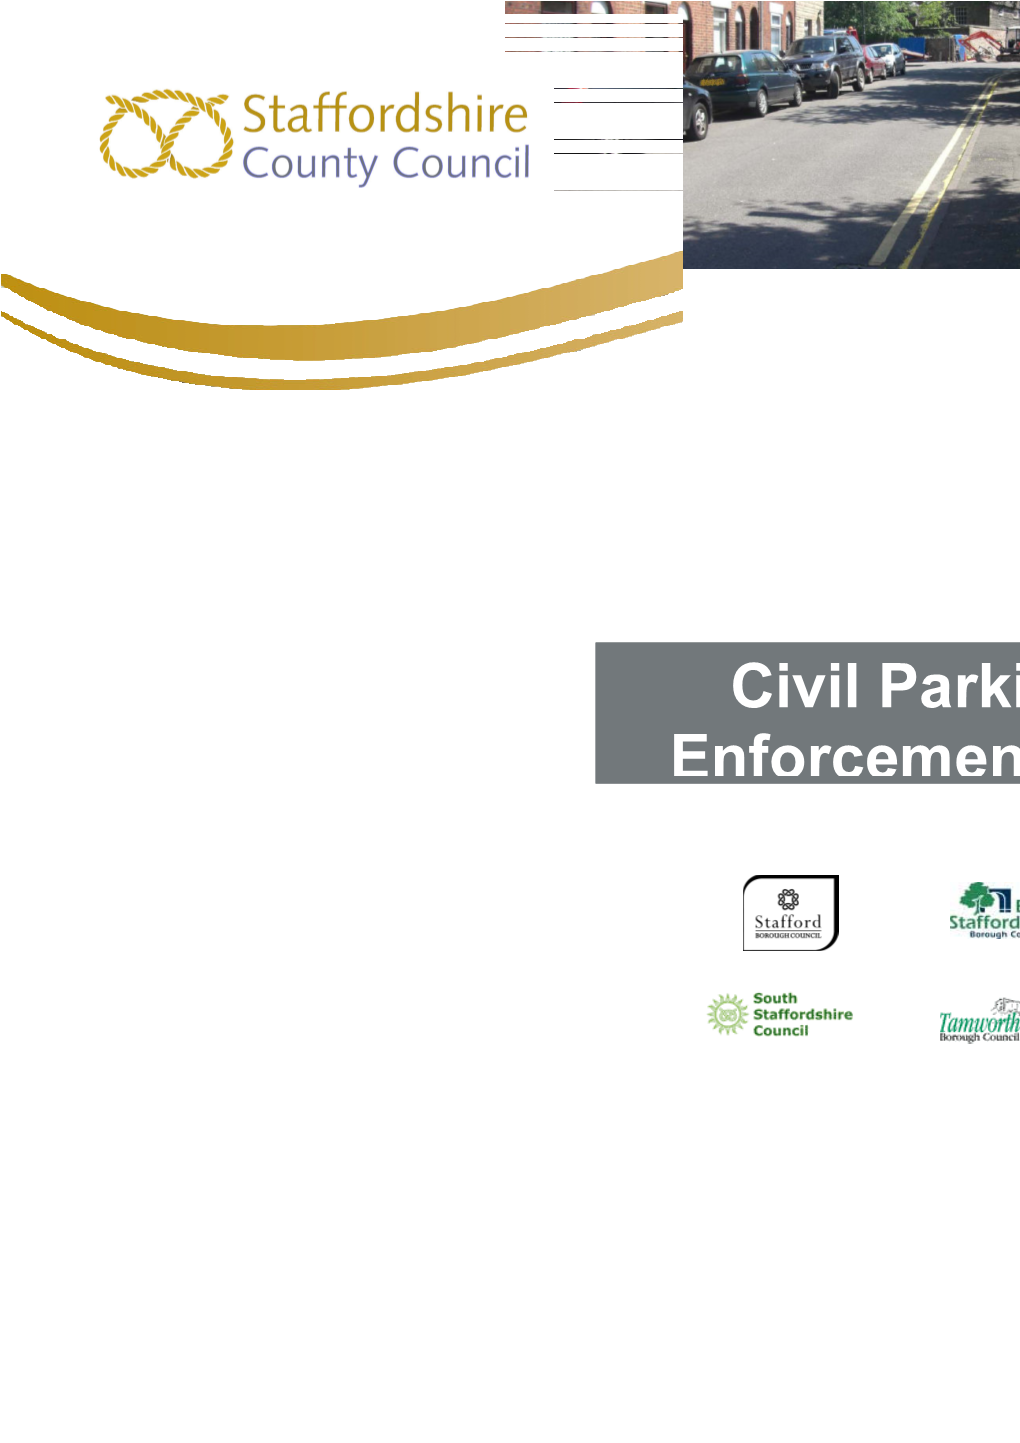 Civil Parking Enforcement